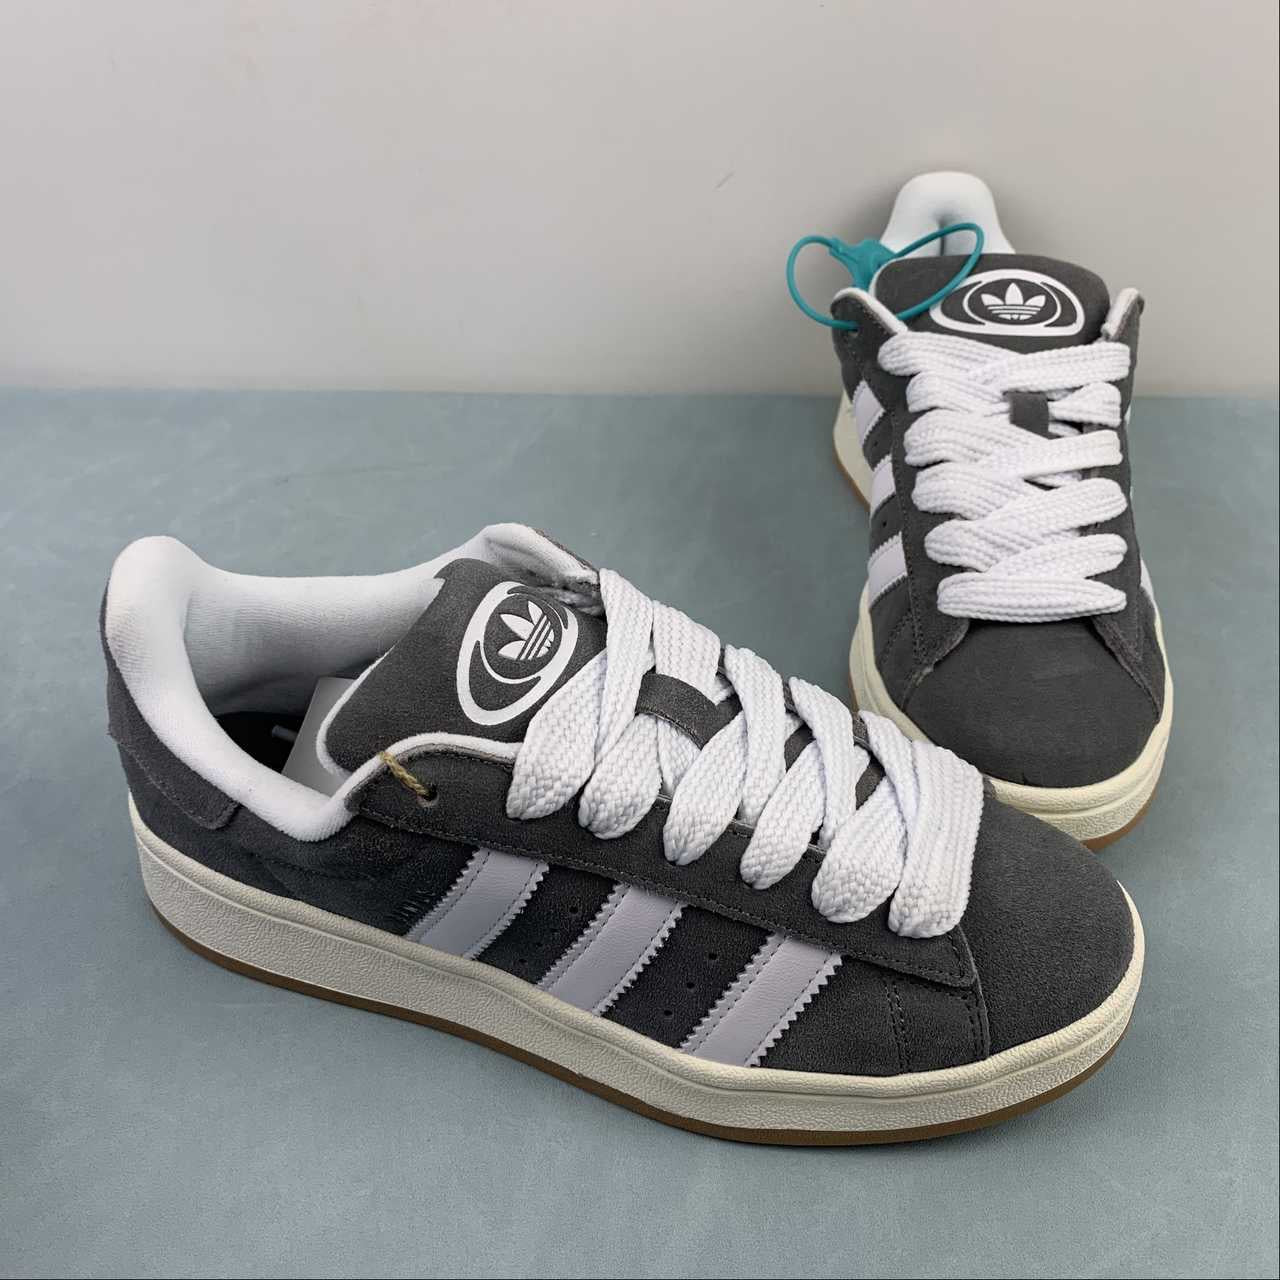 Adidas campus grey shoes